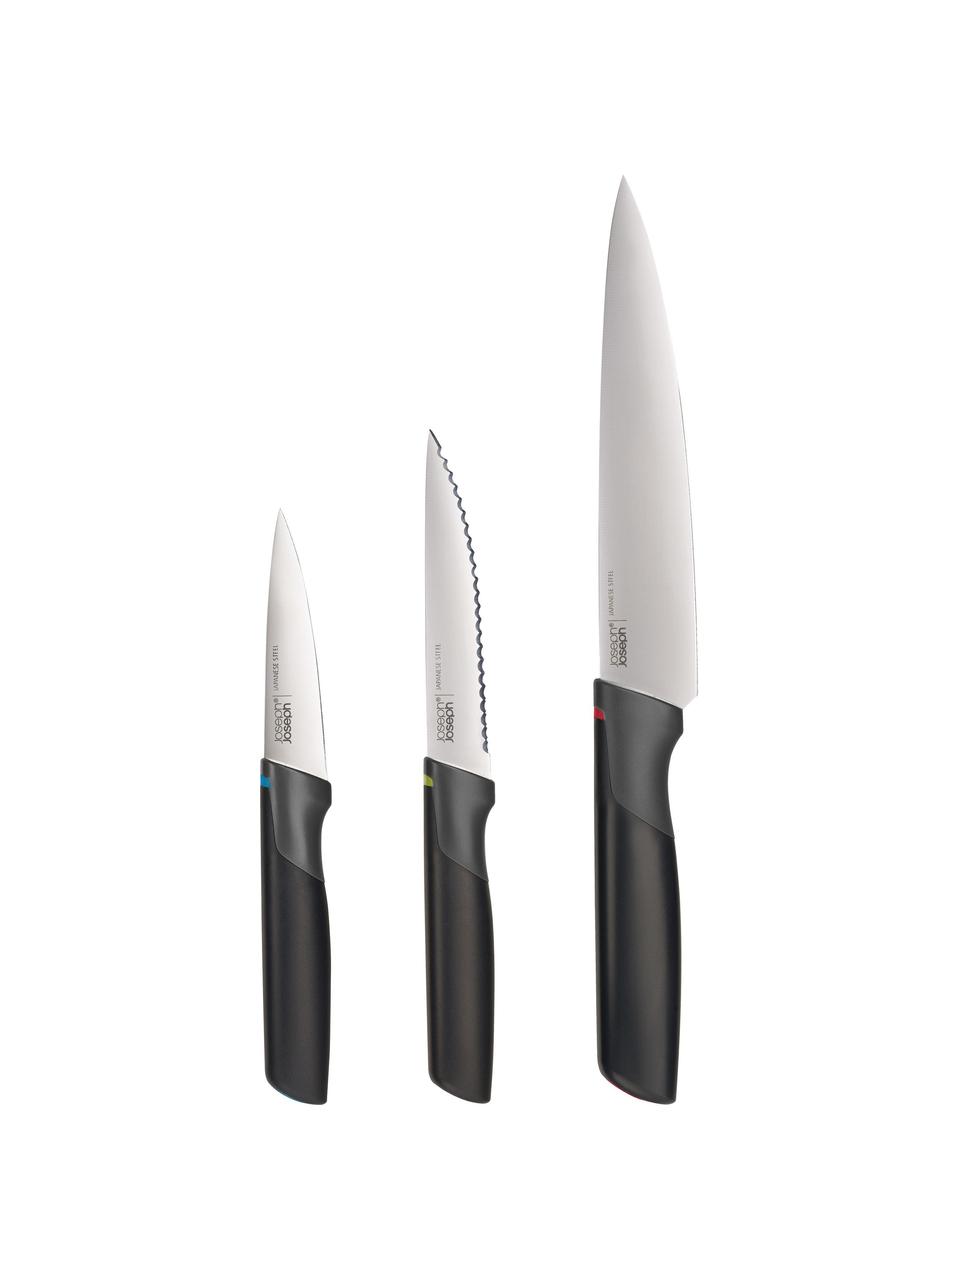 Set de cuchillos Elevate, 3 uds., Acero inoxidable, Negro, plateado, Set de diferentes tamaños